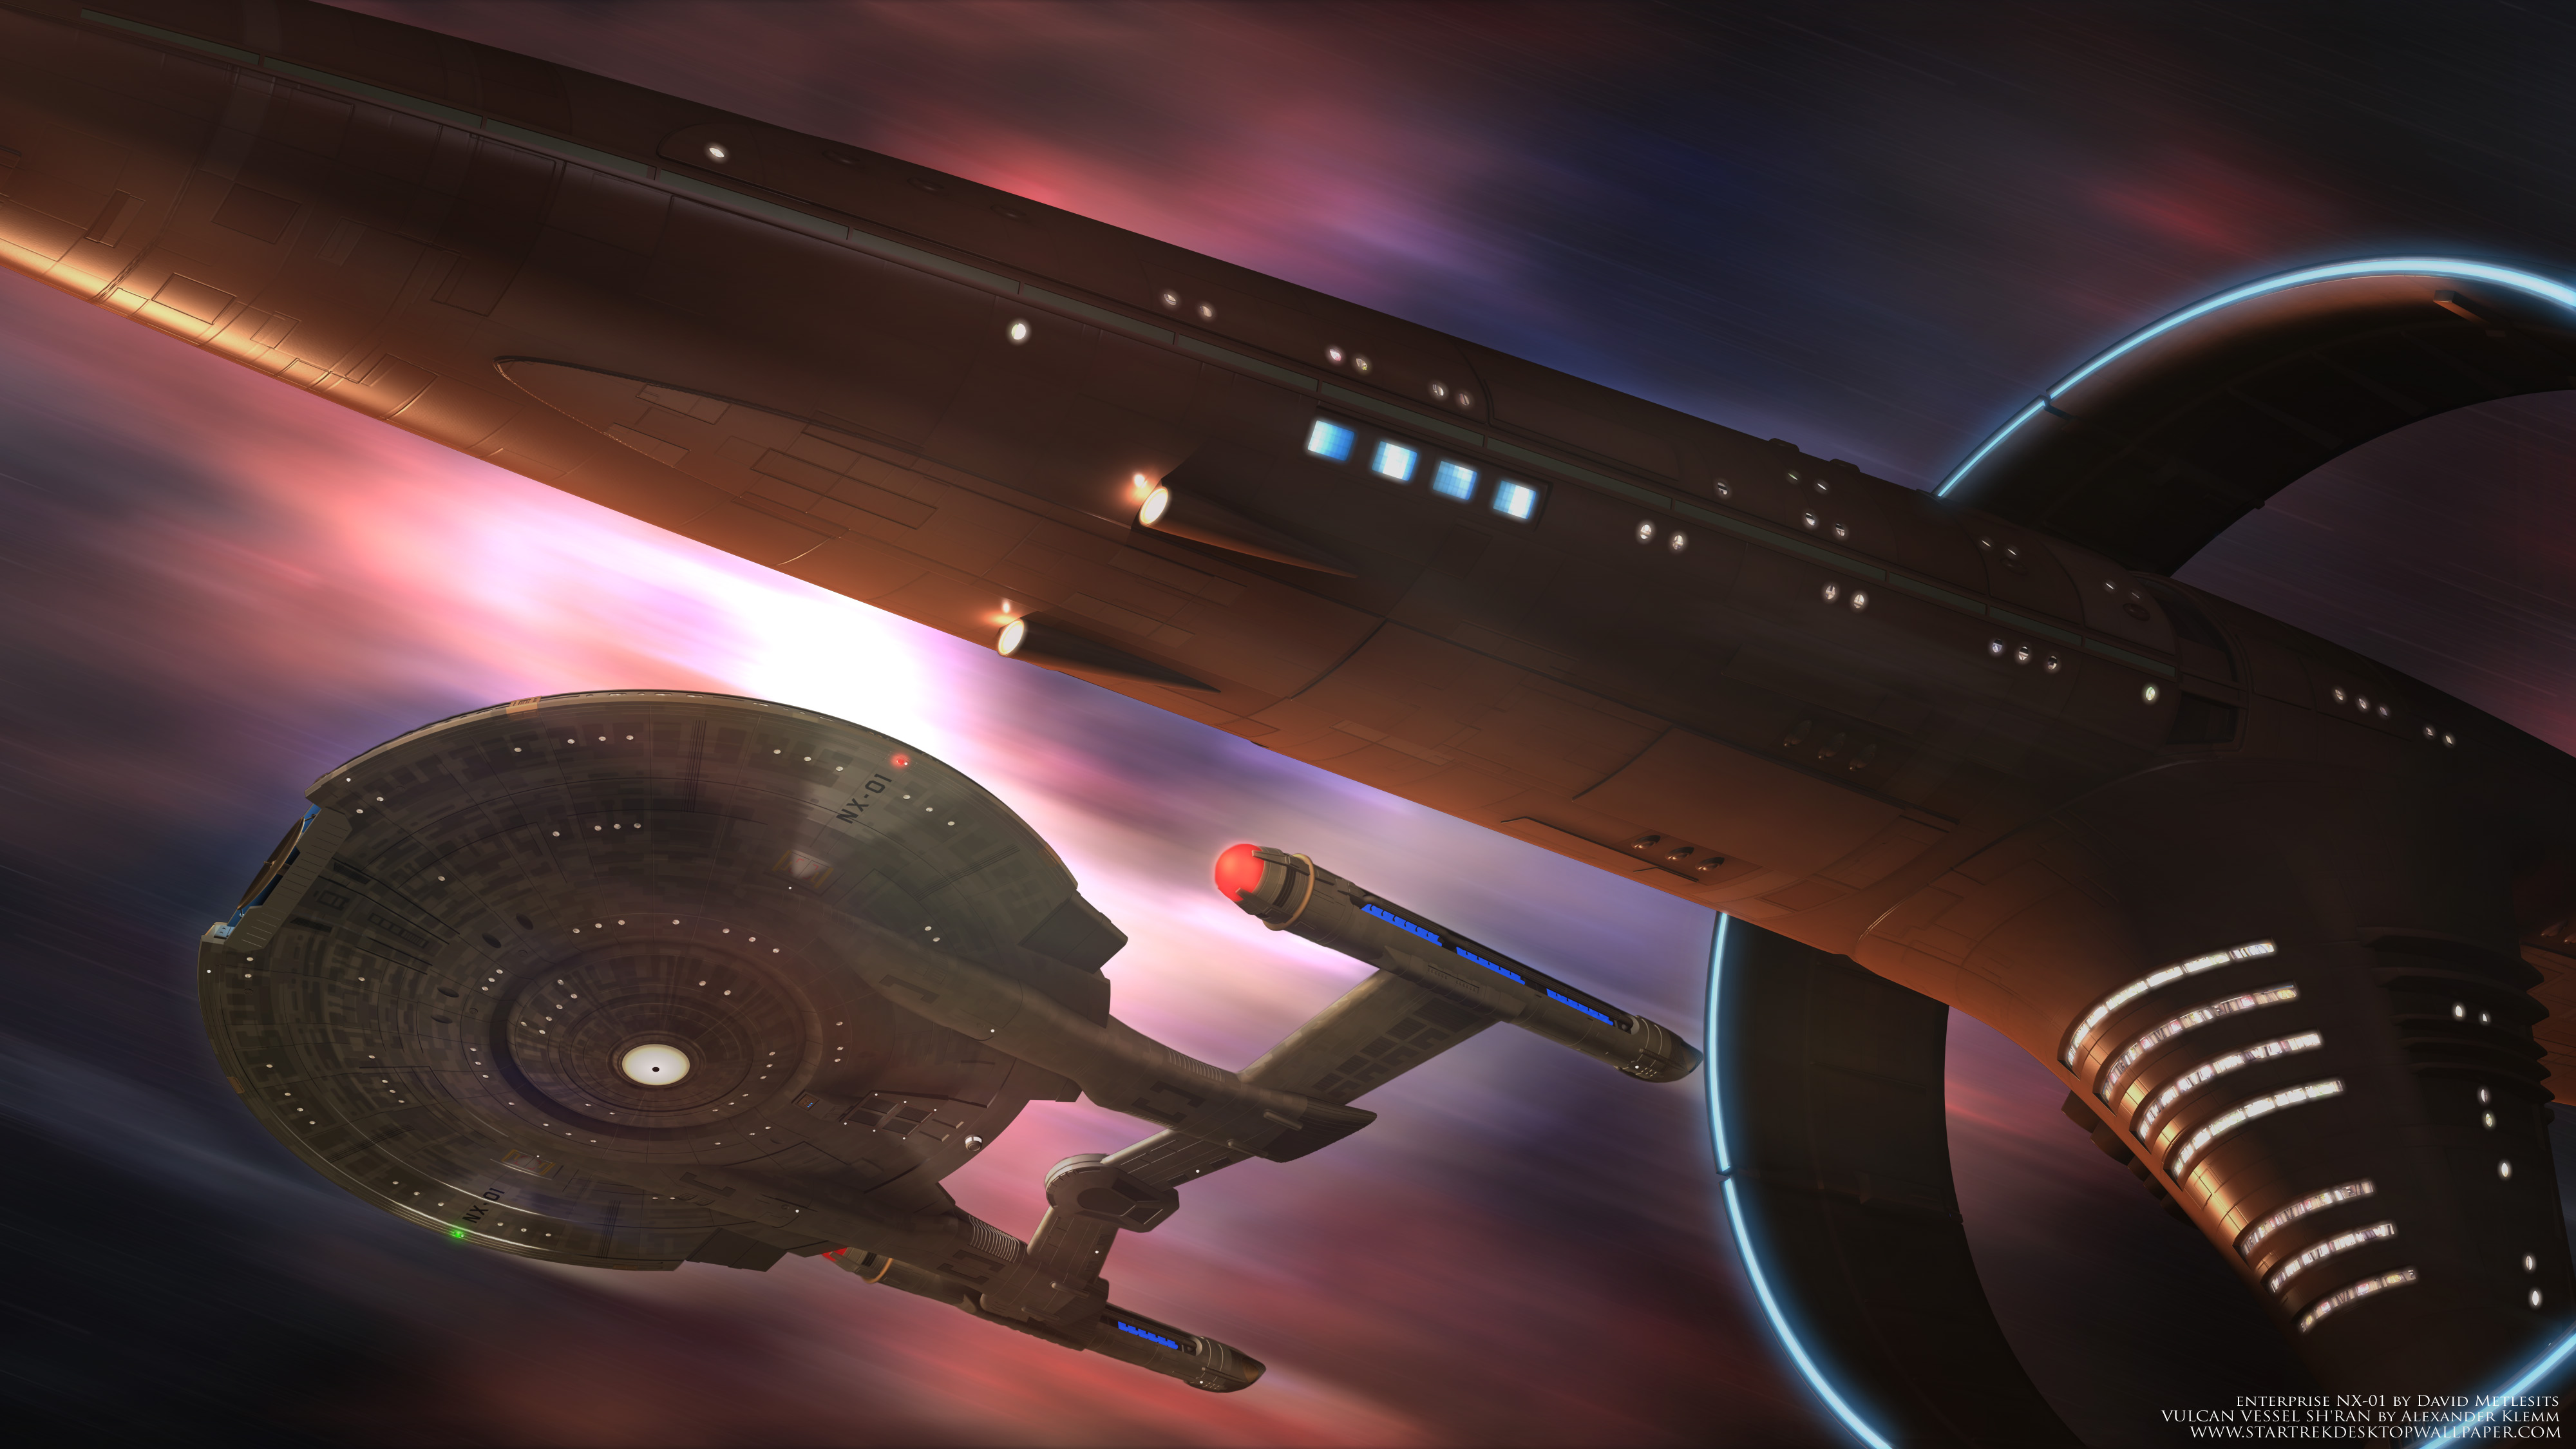 Vulcan Vessel Sh Ran And U - Star Trek Nx 01 Hd - HD Wallpaper 